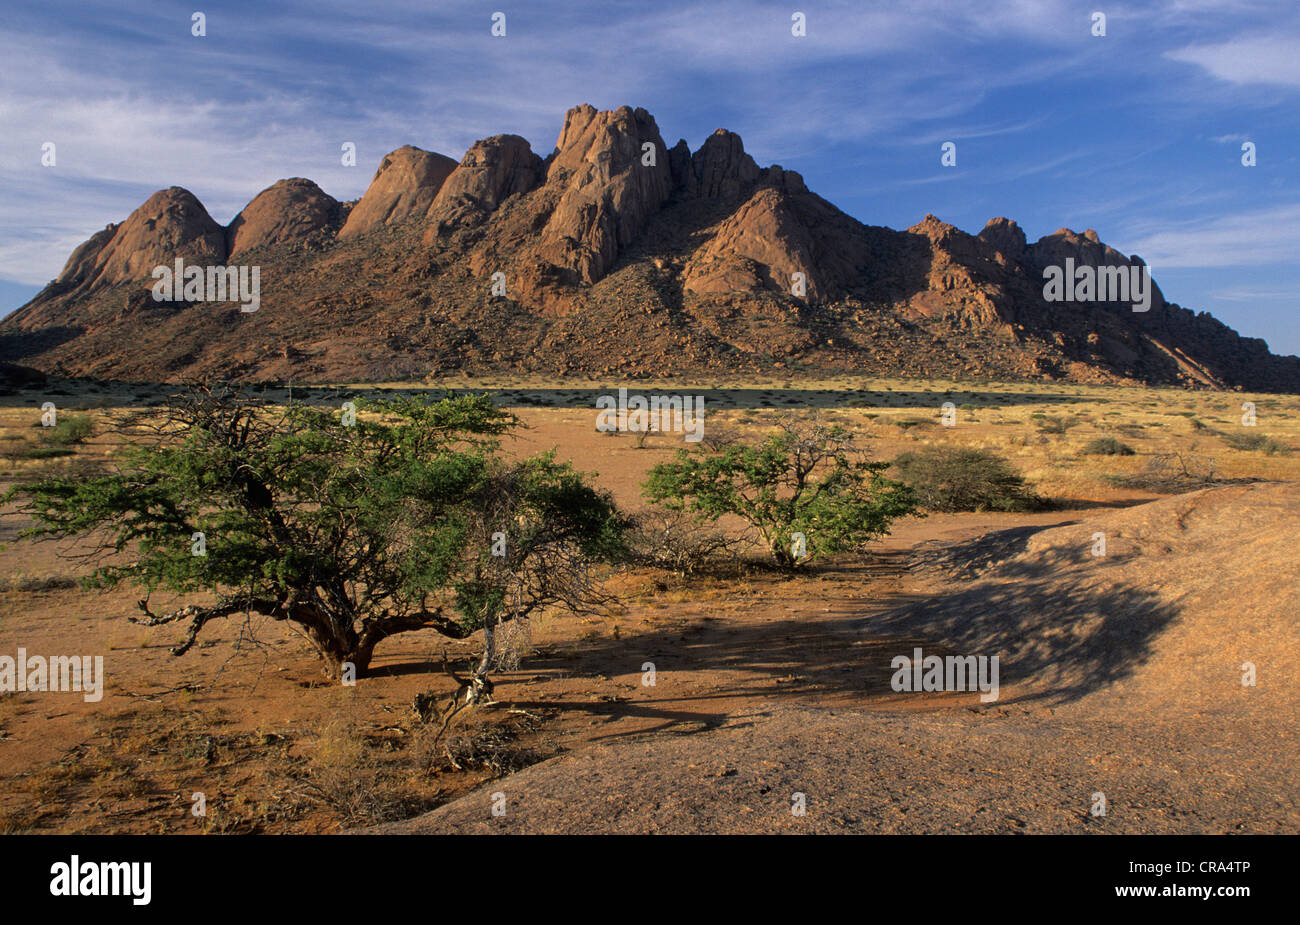 Spitzkoppe Mountain, Namib Desert, Namibia, Africa Stock Photo